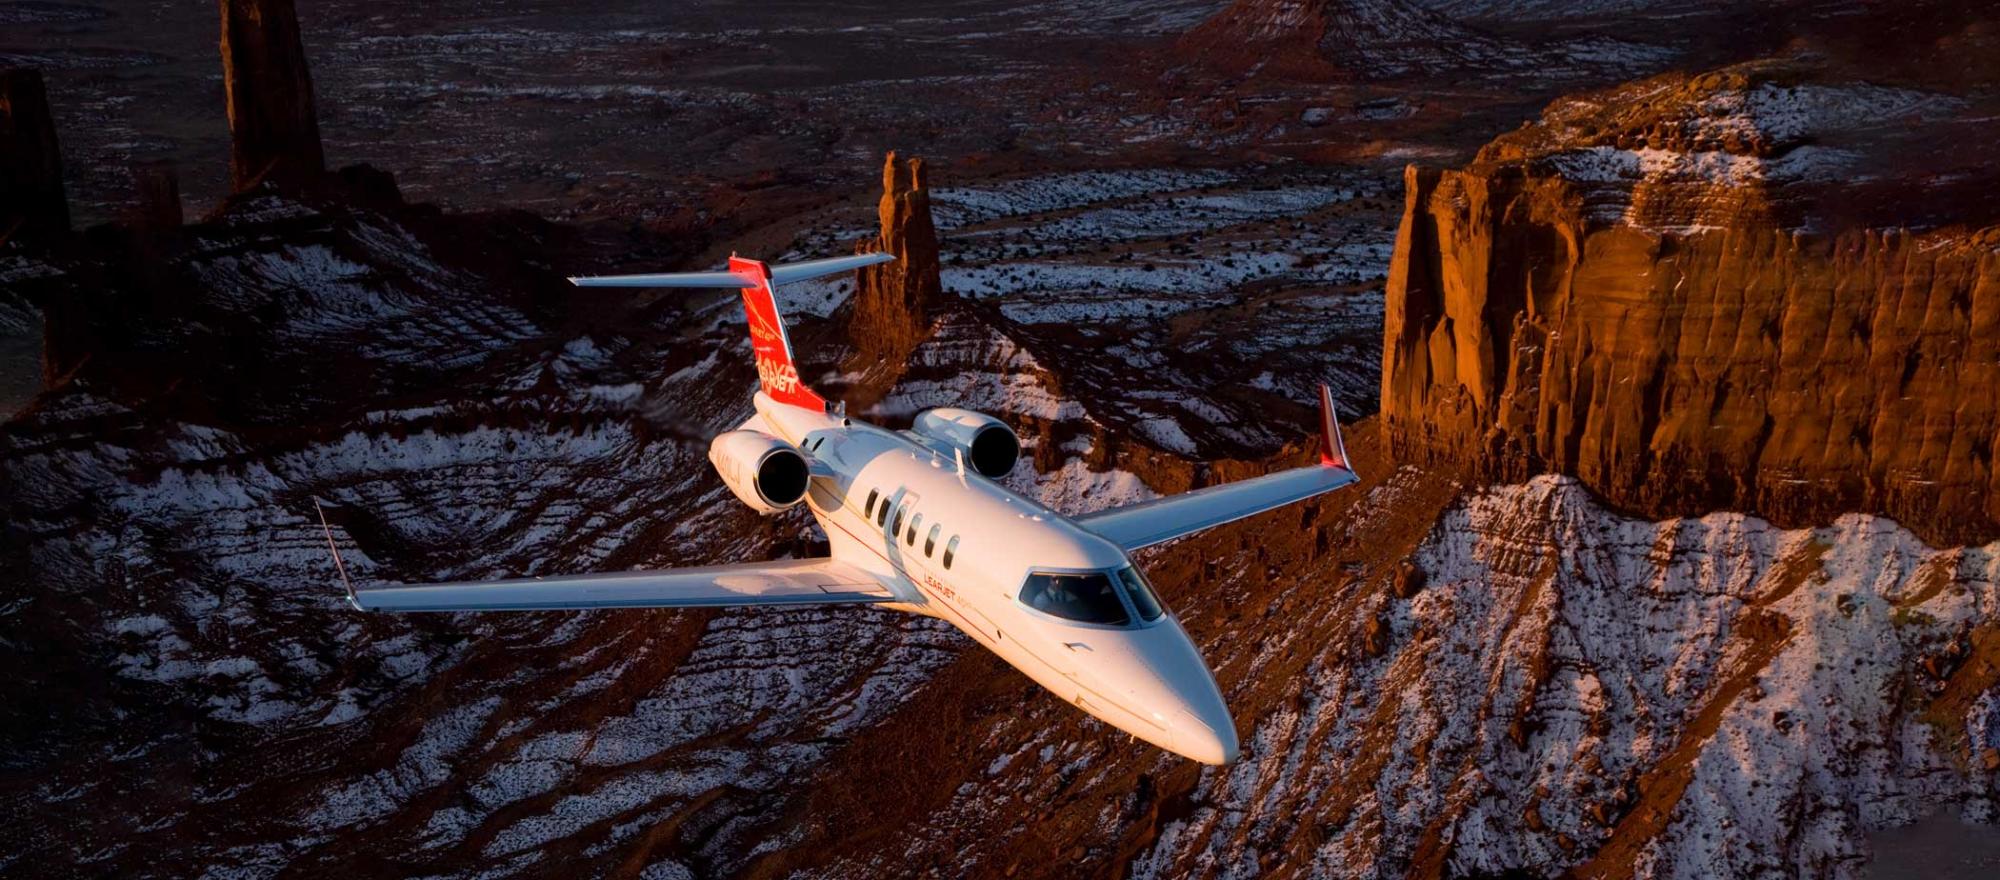 Bombardier Learjet 40XR